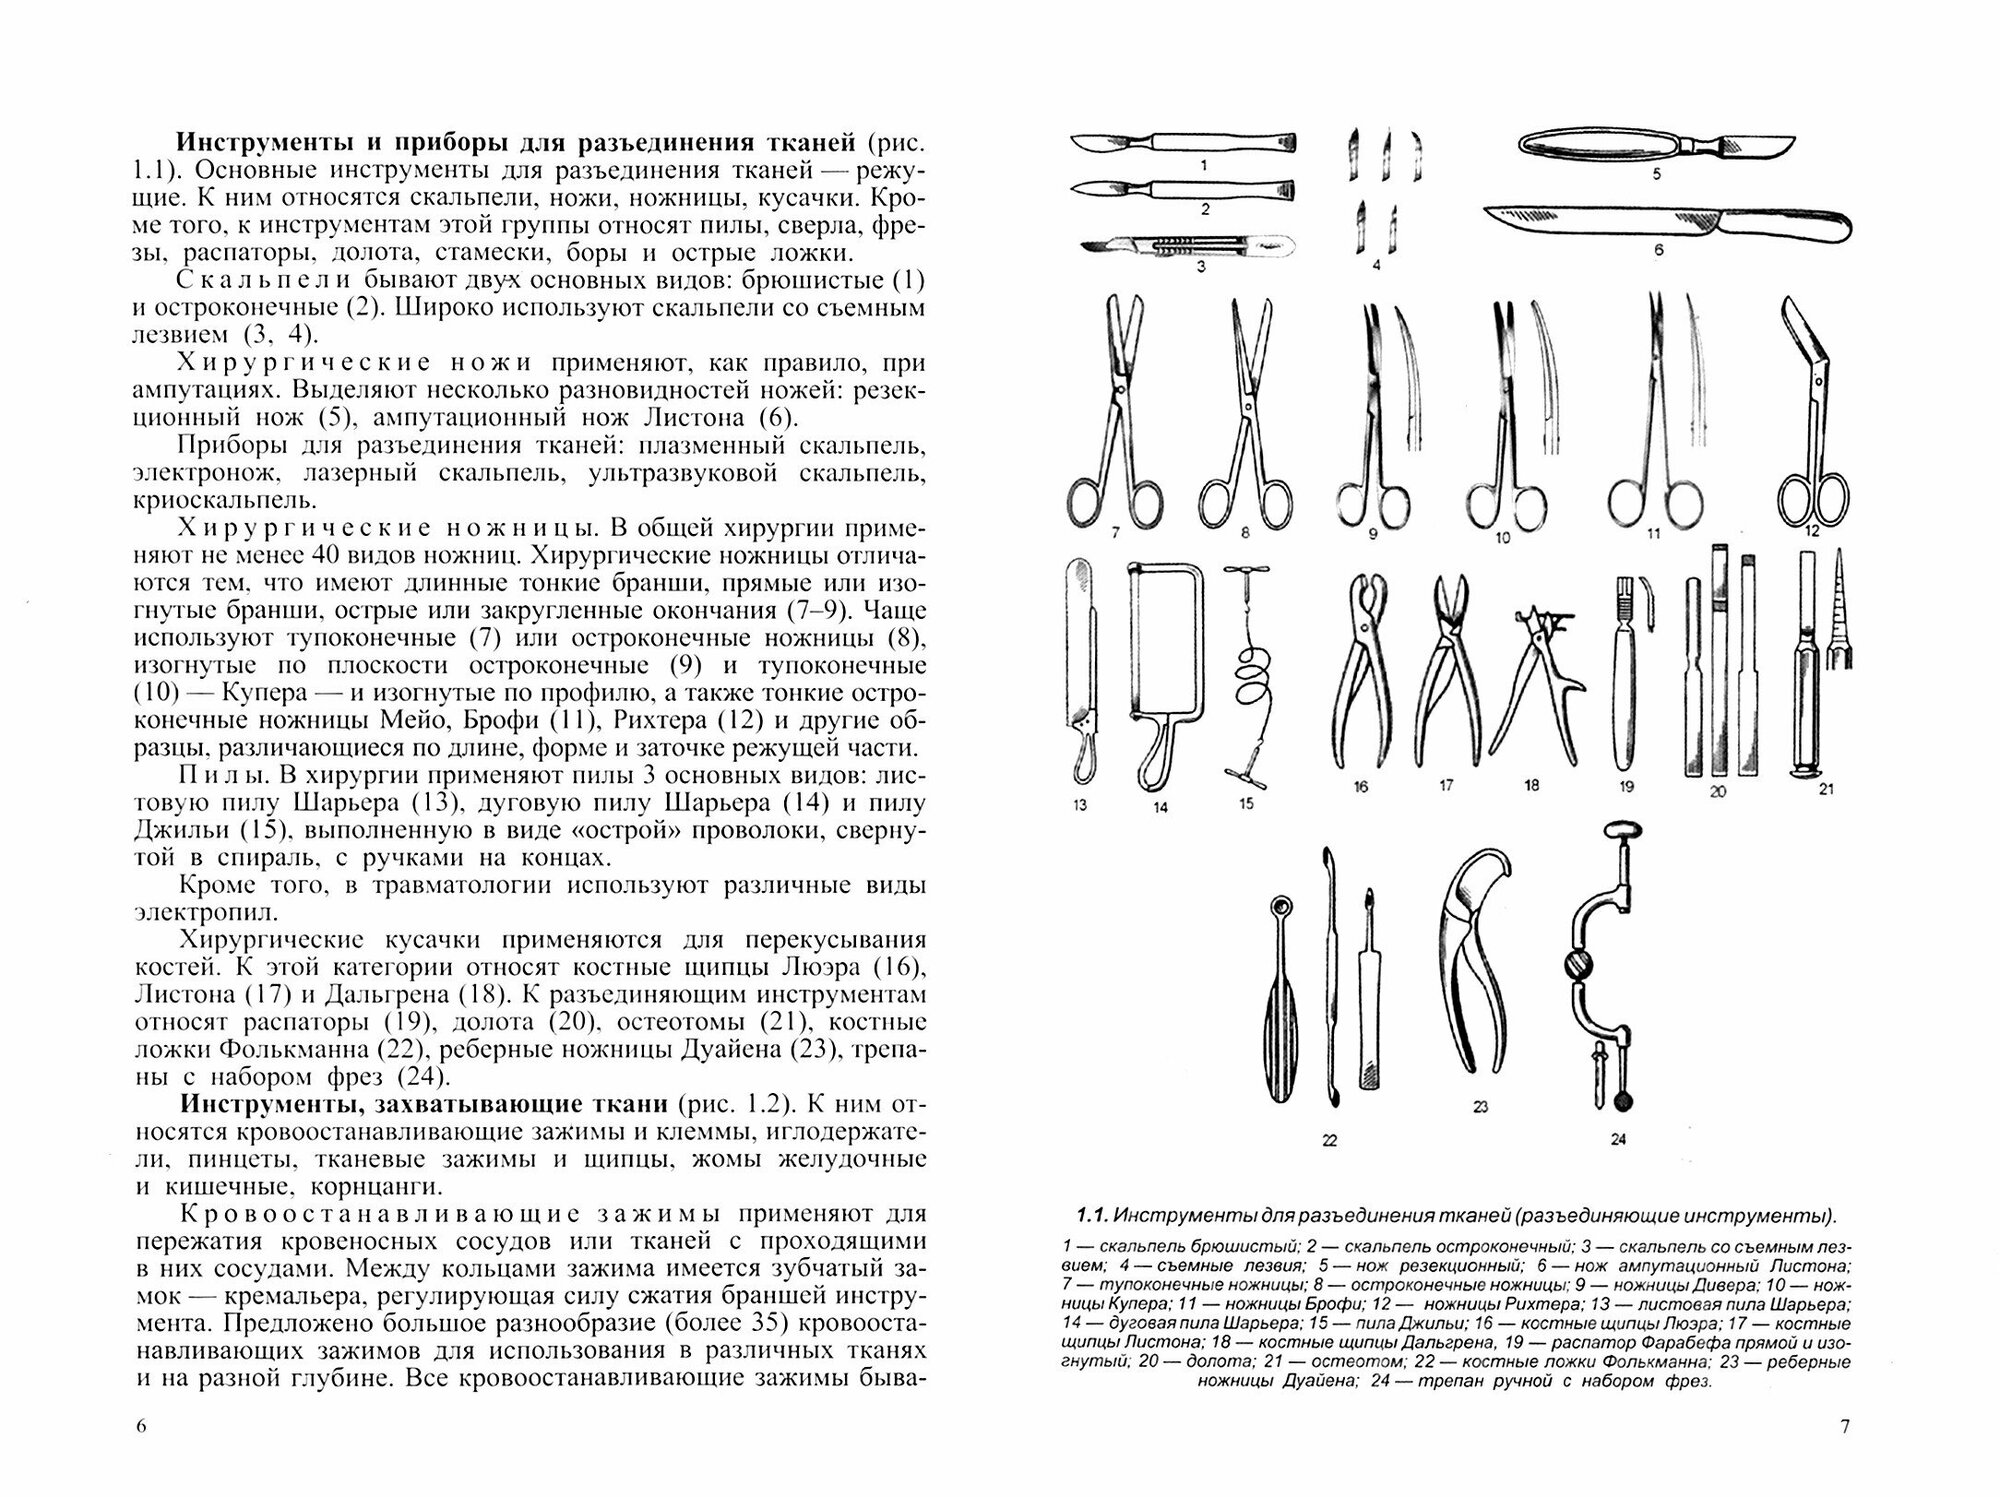 Хирургические инструменты и правила их применения. Руководство для врачей - фото №2